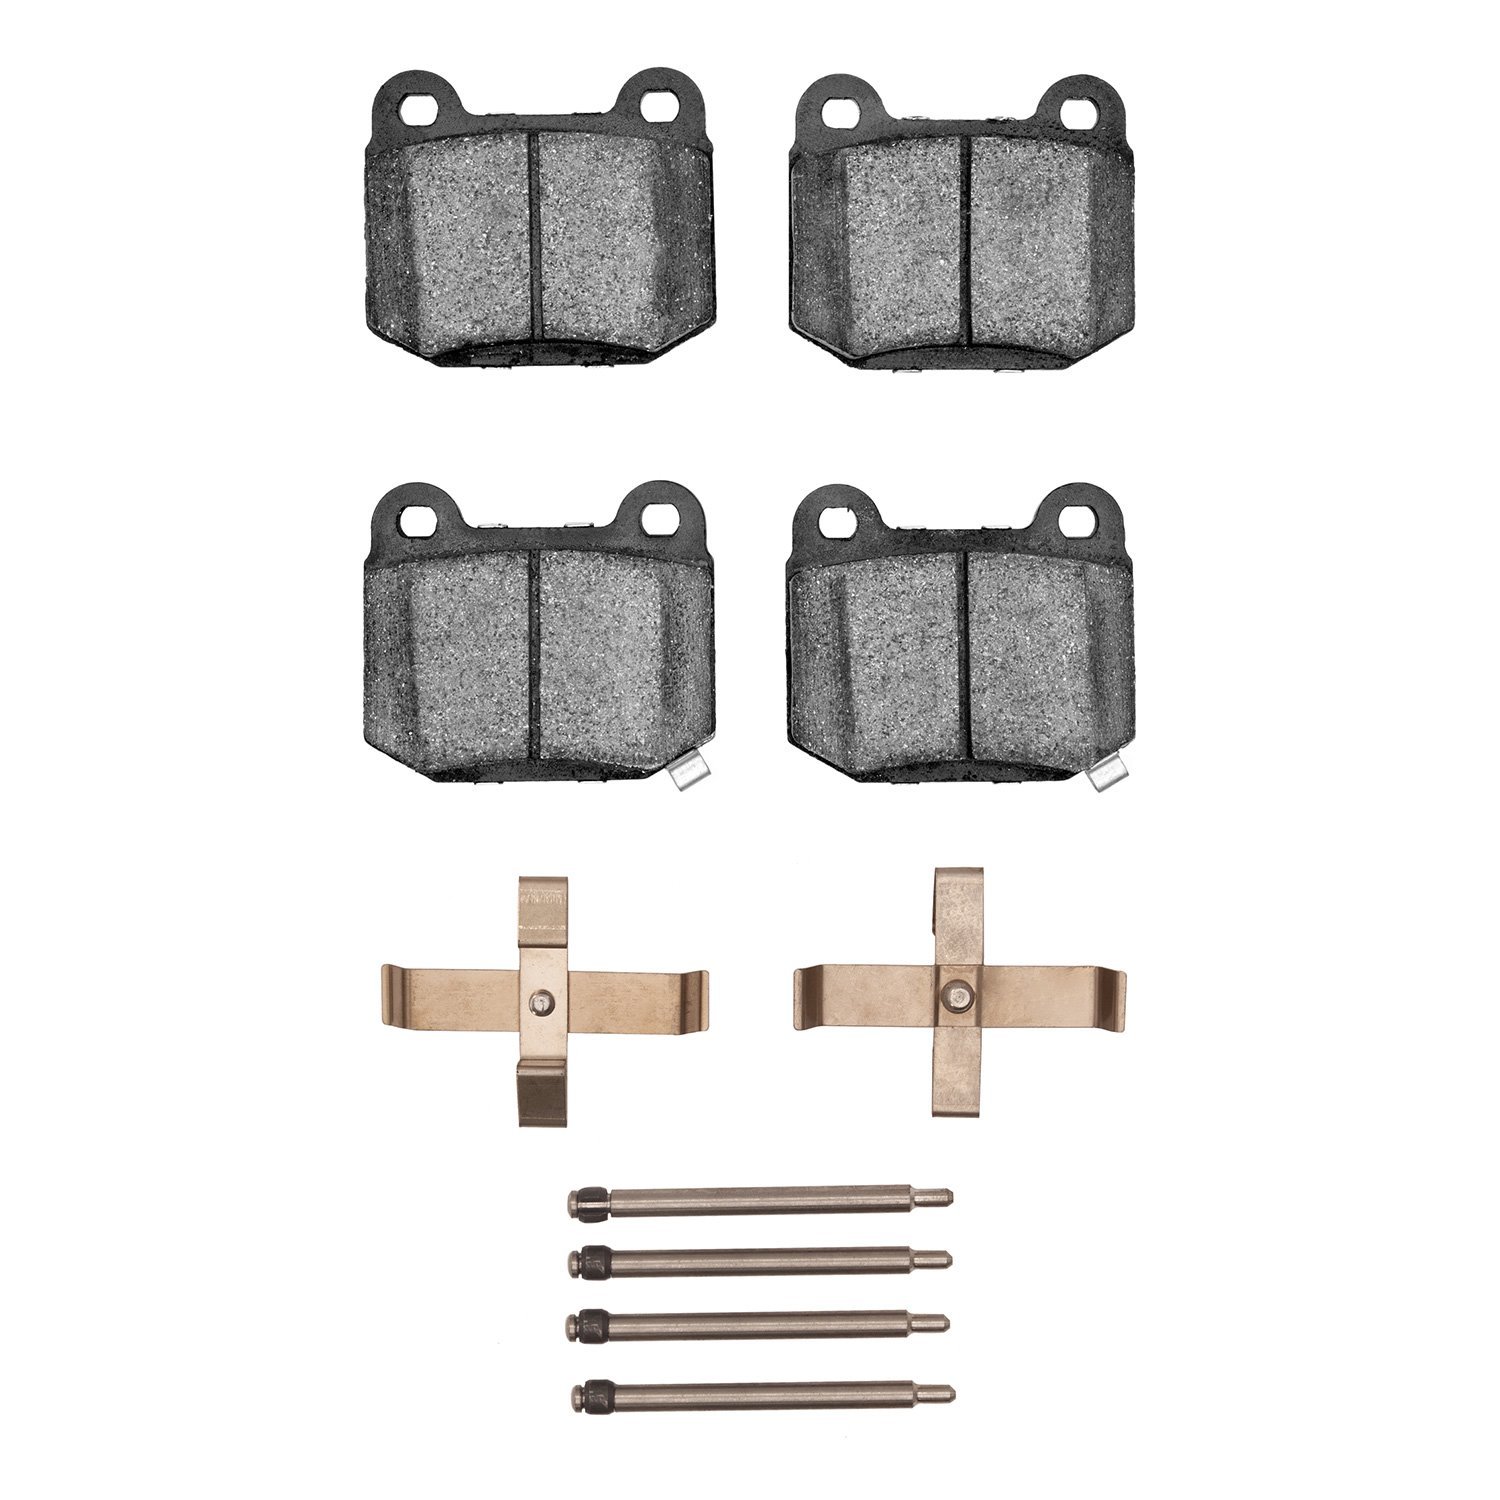 1310-0961-02 3000-Series Ceramic Brake Pads & Hardware Kit, 2003-2006 Mitsubishi, Position: Rear